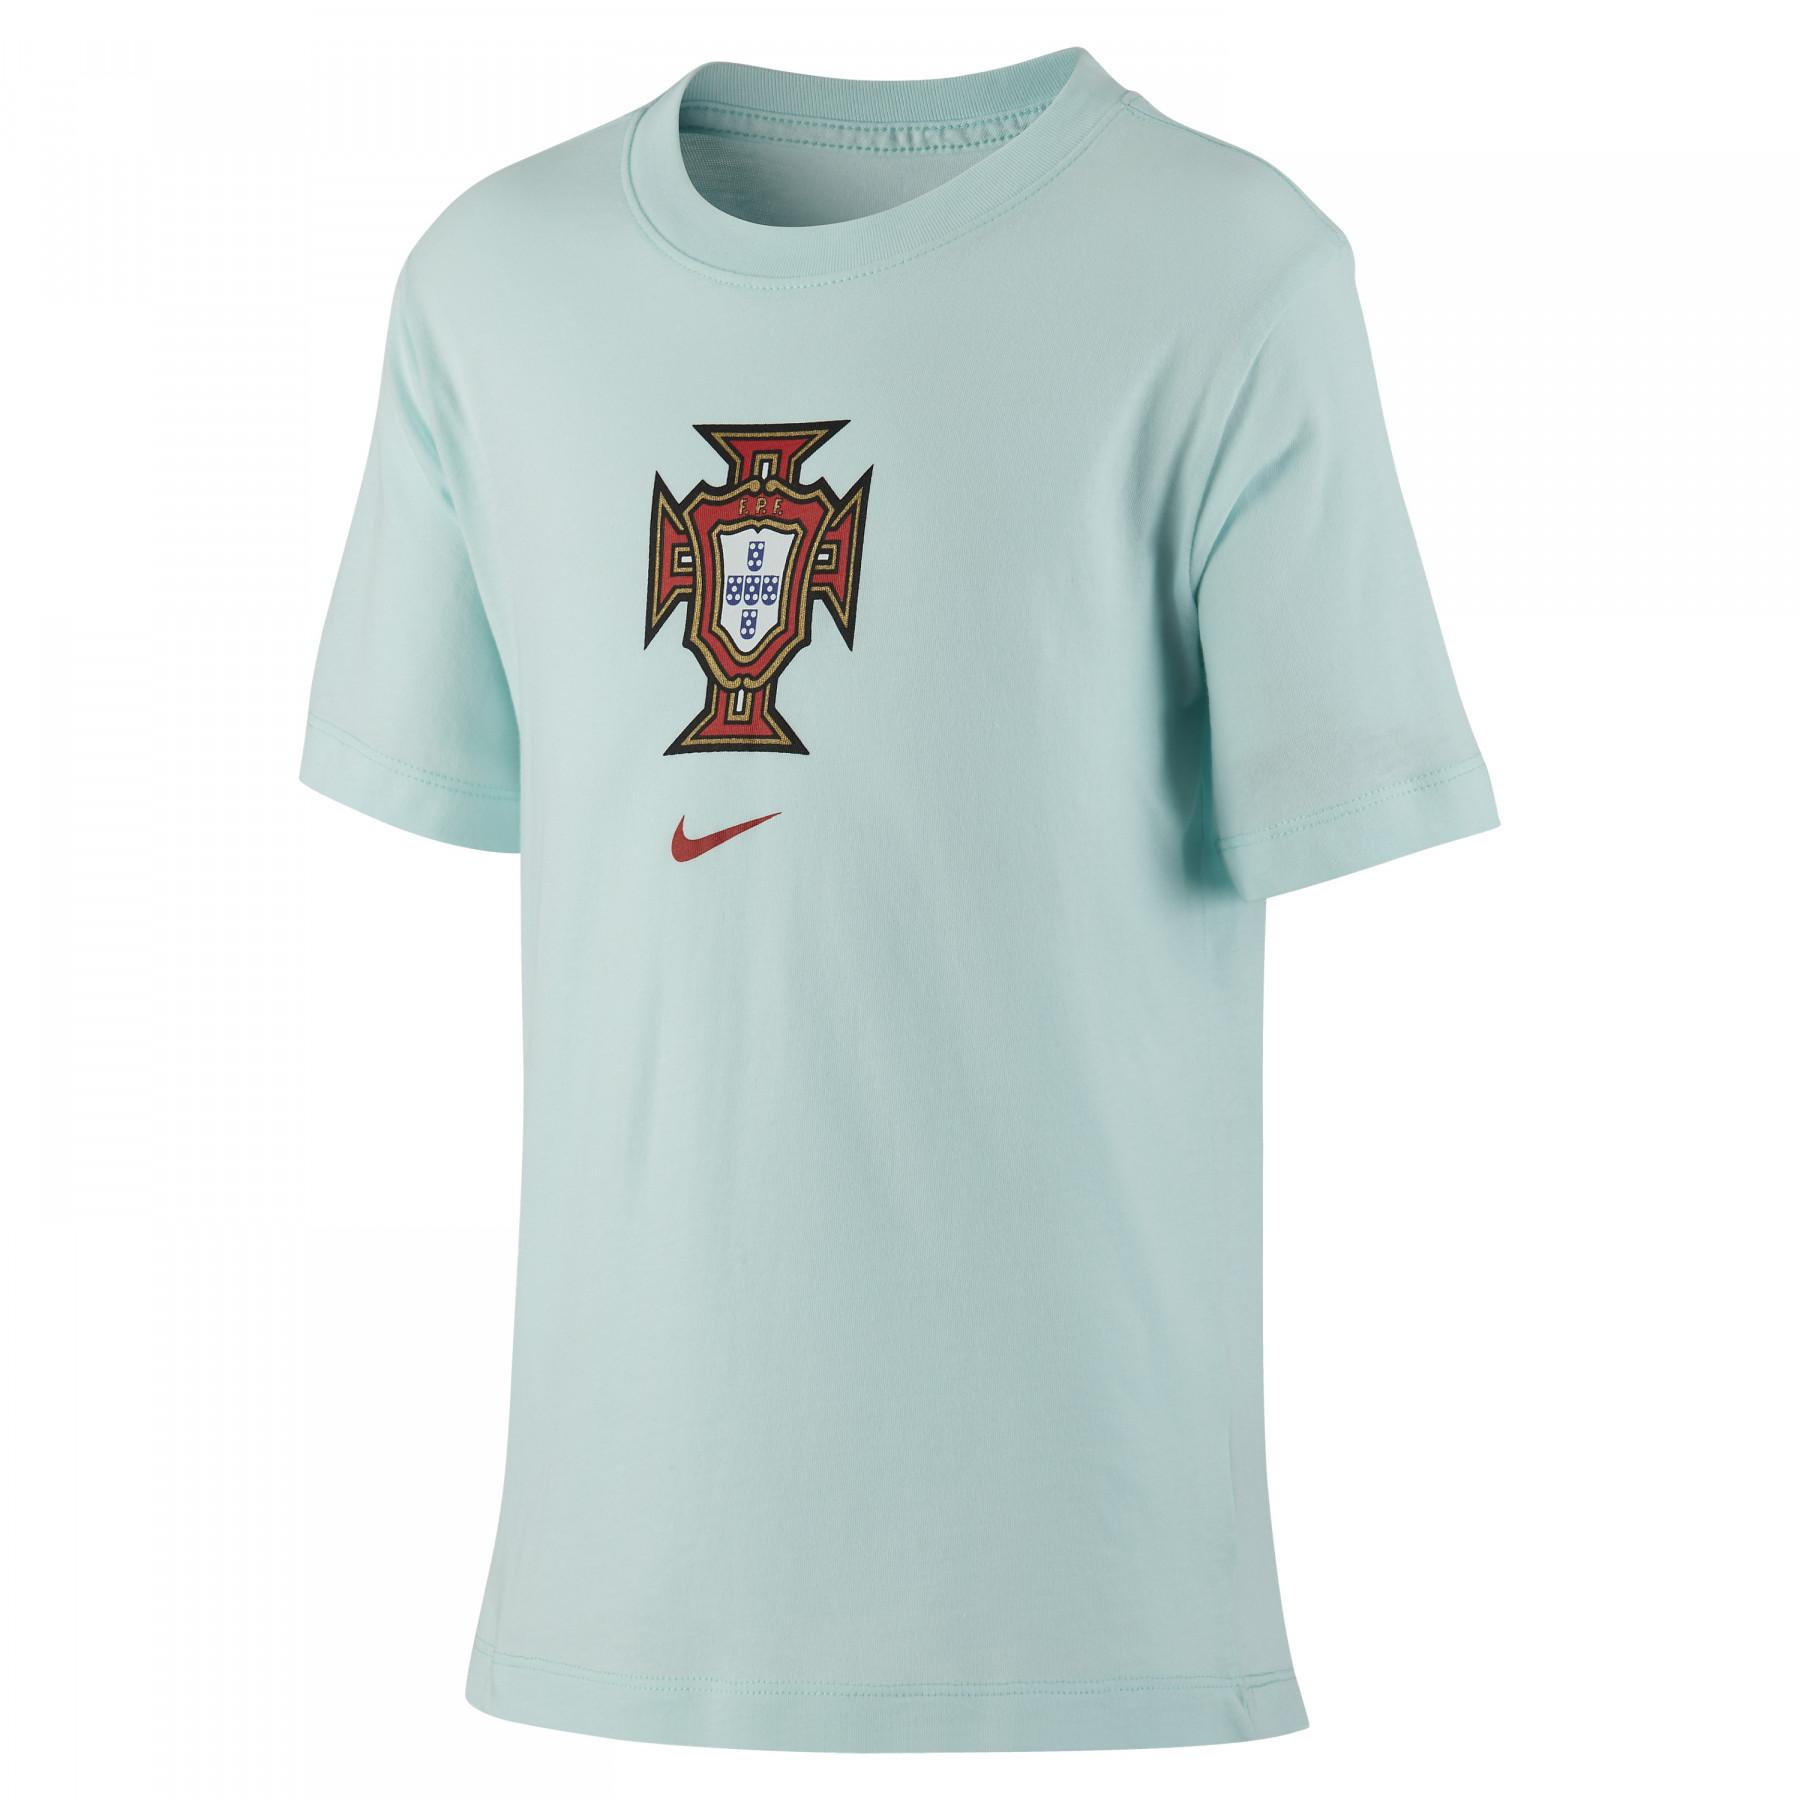 Kinder-T-Shirt Portugal Evergreen Crest